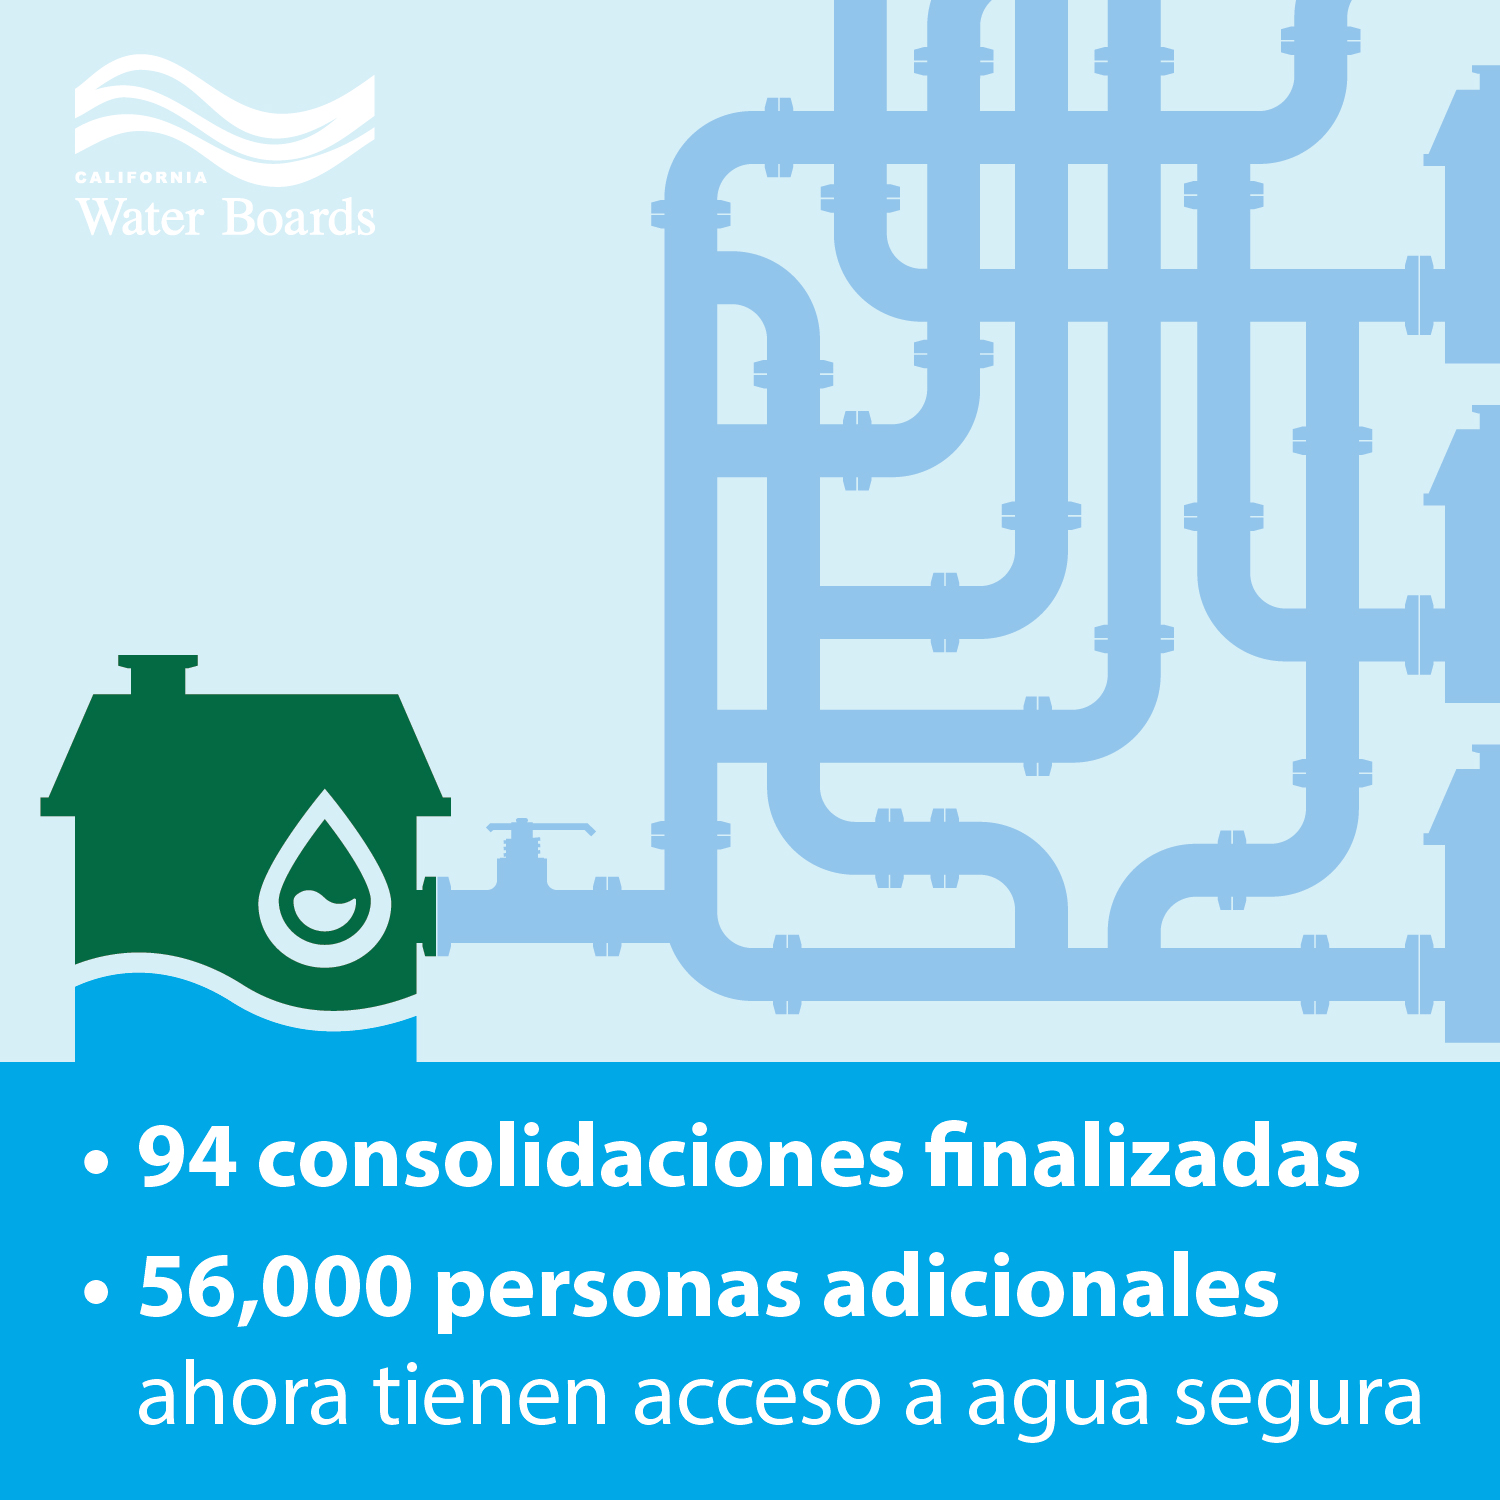 94 consolidaciones finalizadas y 56,00 personas adicionales ahora tienen acceso a agua segura